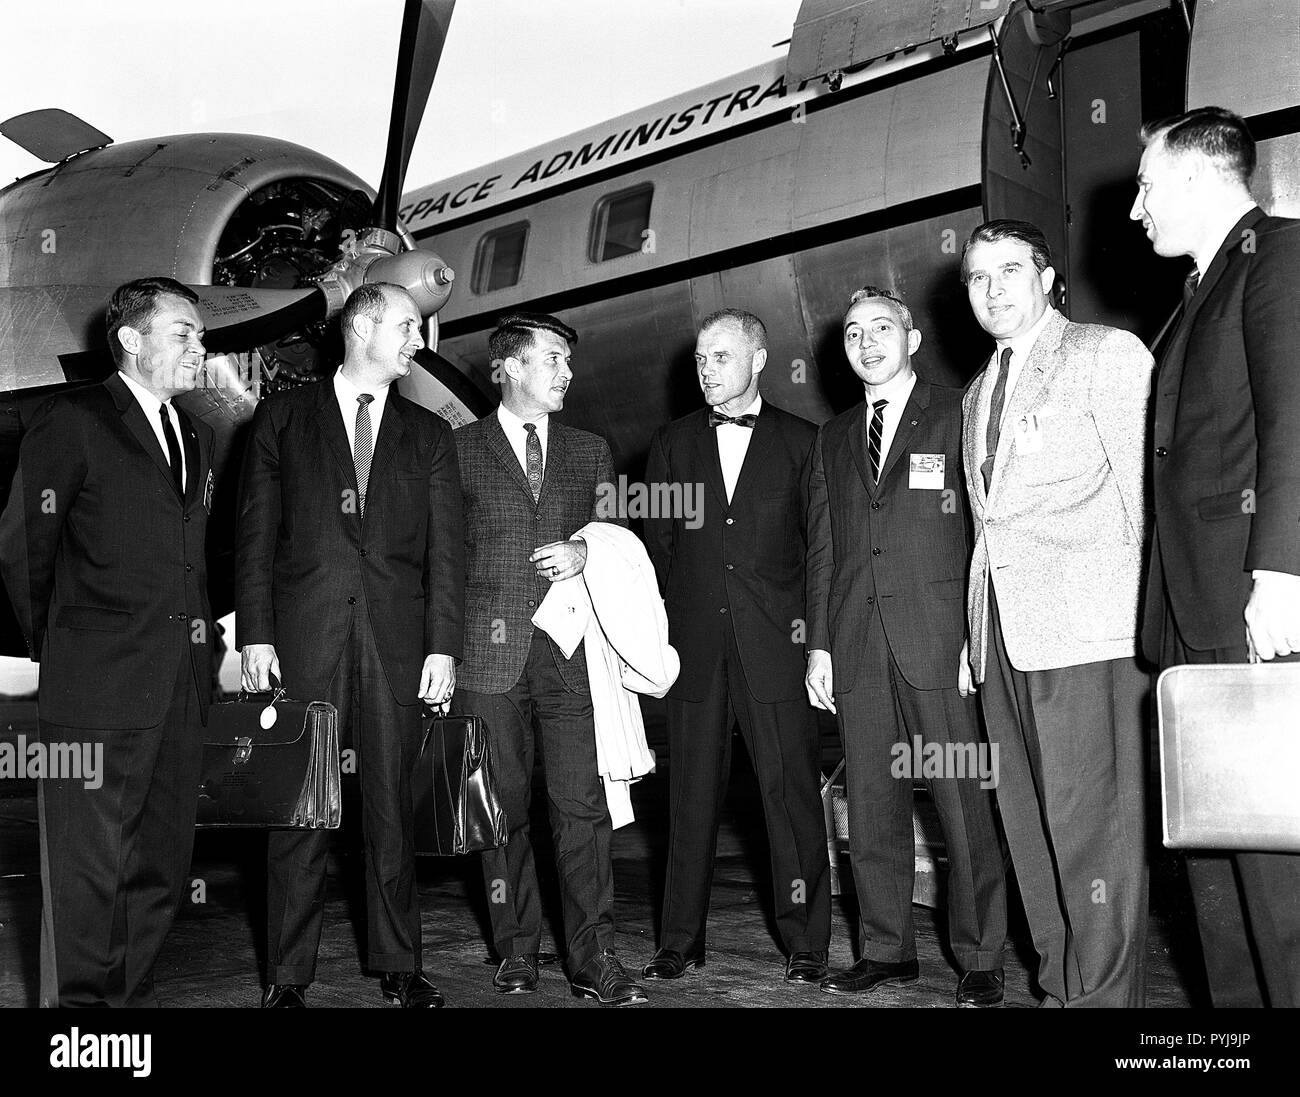 Questa fotografia è stata presa nel settembre 1962 durante un tale visita. Da sinistra a destra sono Elliot vedere, Tom Stafford, Wally Schirra, John Glenn, Brainerd Holmes, il dottor von Braun, e Jim Lovell. Foto Stock